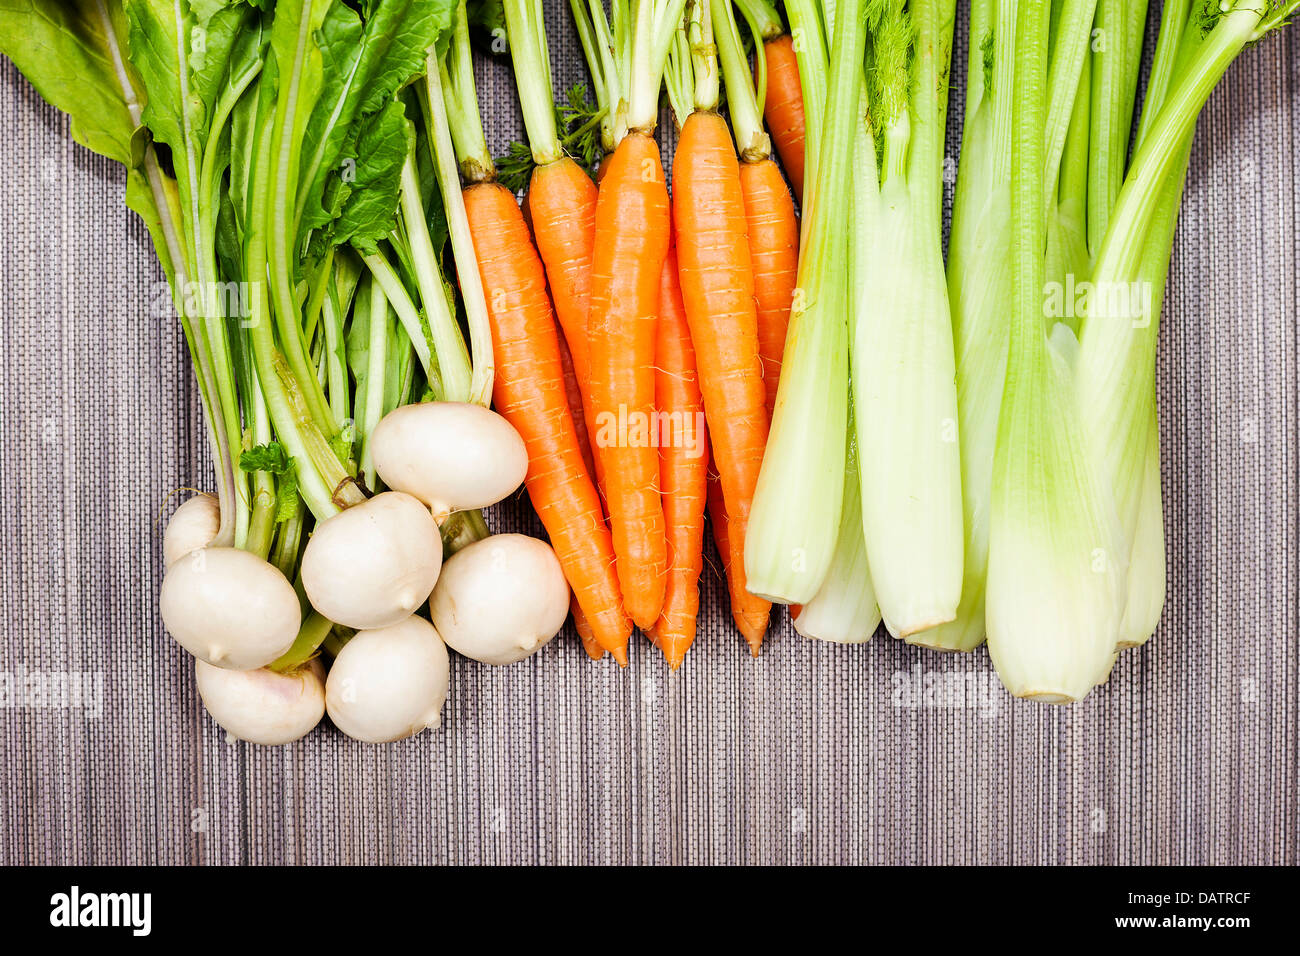 Le navet, la carotte et le céleri de jardin Banque D'Images